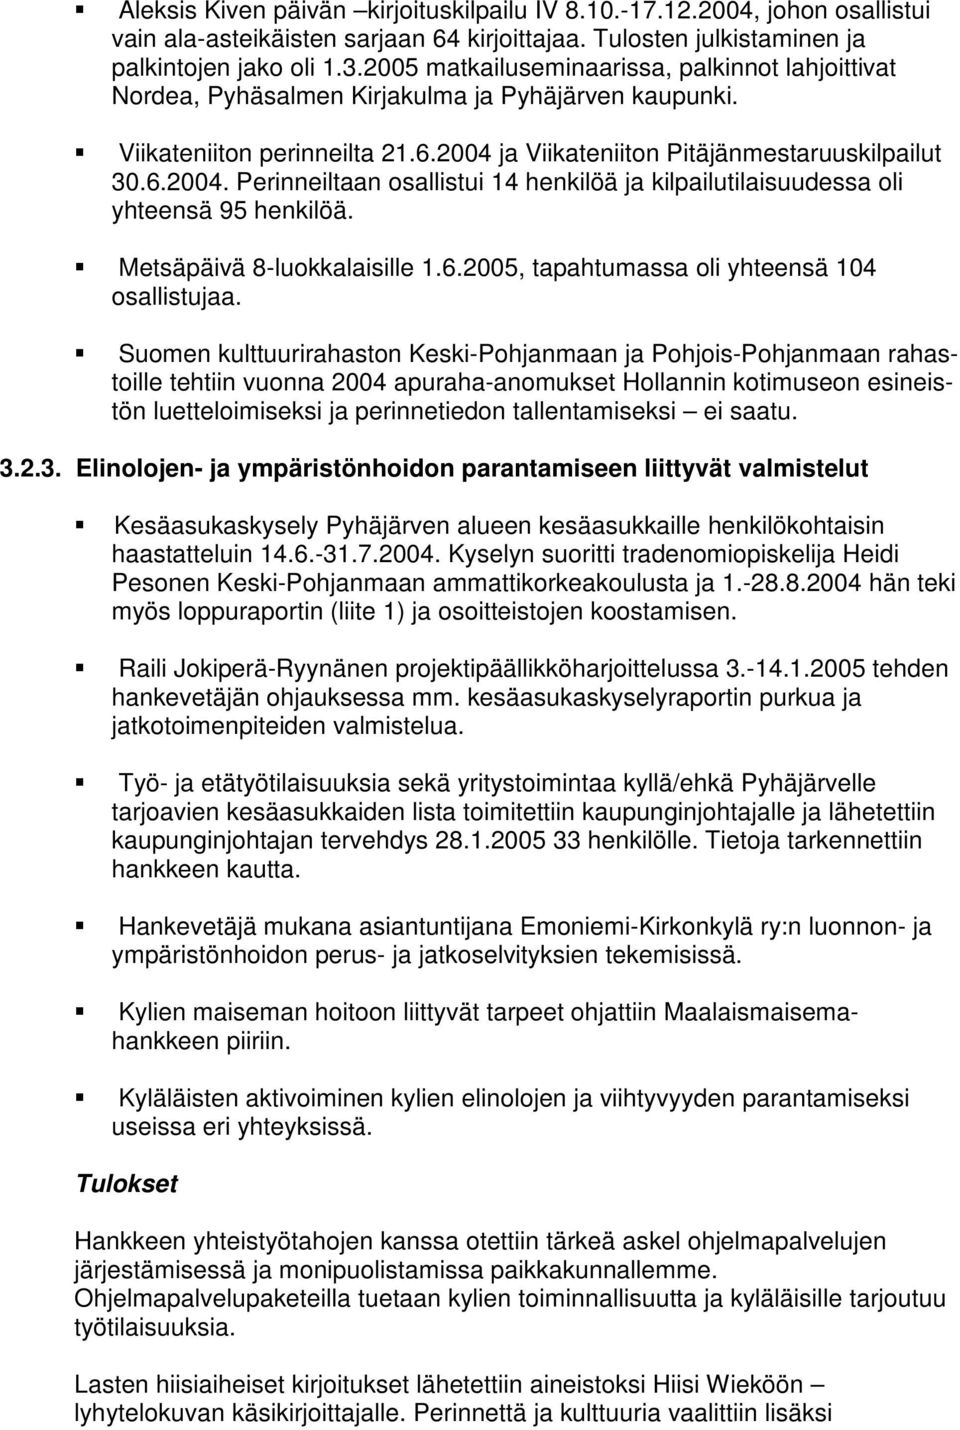 ja Viikateniiton Pitäjänmestaruuskilpailut 30.6.2004. Perinneiltaan osallistui 14 henkilöä ja kilpailutilaisuudessa oli yhteensä 95 henkilöä. Metsäpäivä 8-luokkalaisille 1.6.2005, tapahtumassa oli yhteensä 104 osallistujaa.